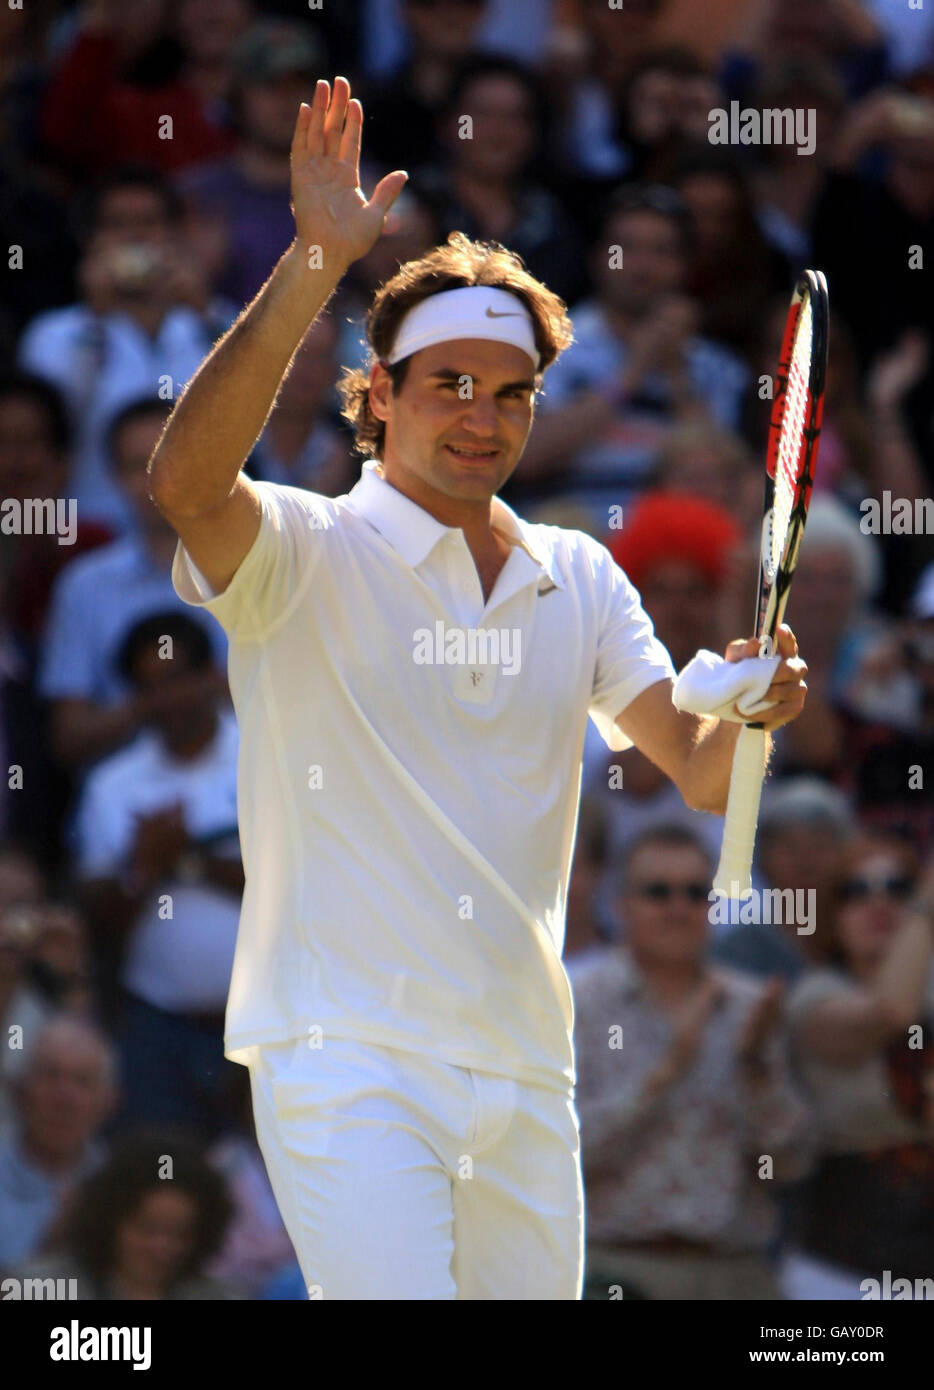 Roger Federer in Svizzera celebra la vittoria contro Mario Ancic in Croazia durante i Campionati di Wimbledon 2008 presso l'All England Tennis Club di Wimbledon. Foto Stock